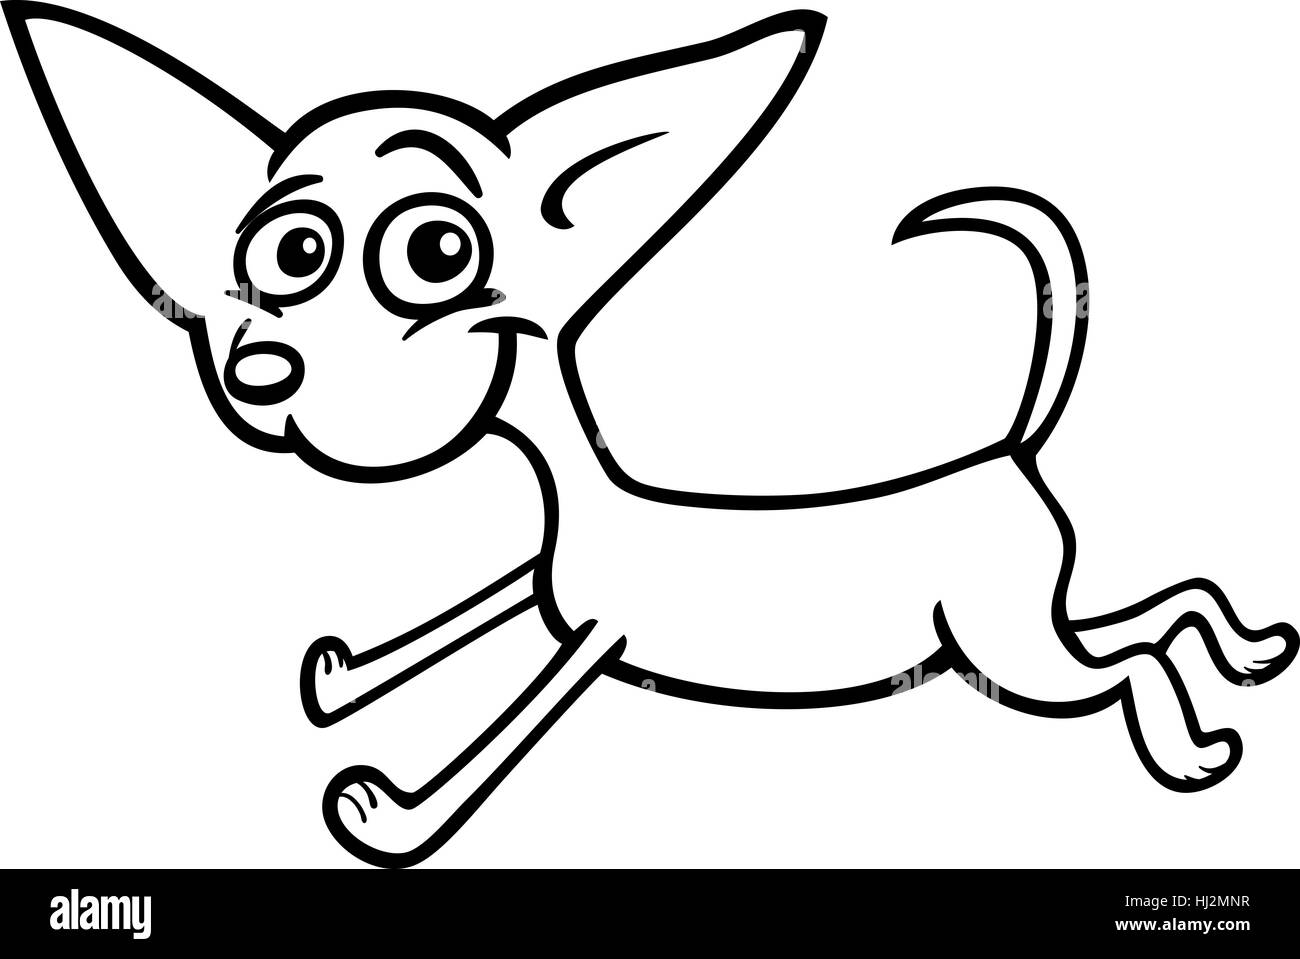 Chihuahua Dog Cartoon Illustration Stock Photos & Chihuahua Dog Cartoon